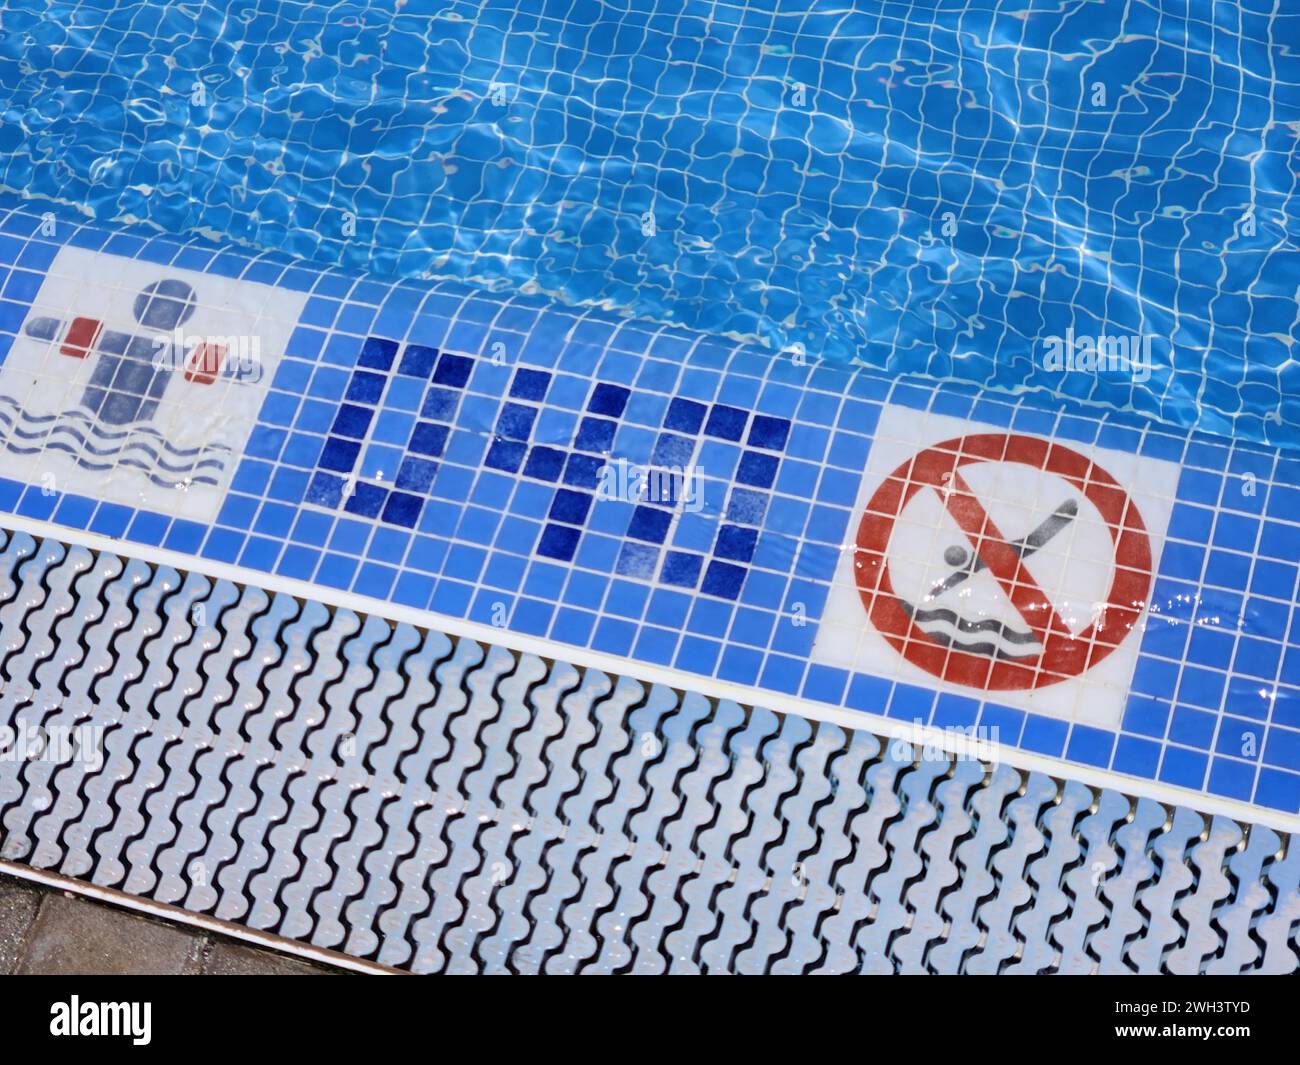 Ein Blick auf den Poolrand mit spezifizierter Tiefe für sicheres Schwimmen und ein Warnschild, das Tauchen verbietet. Spanien. Stockfoto